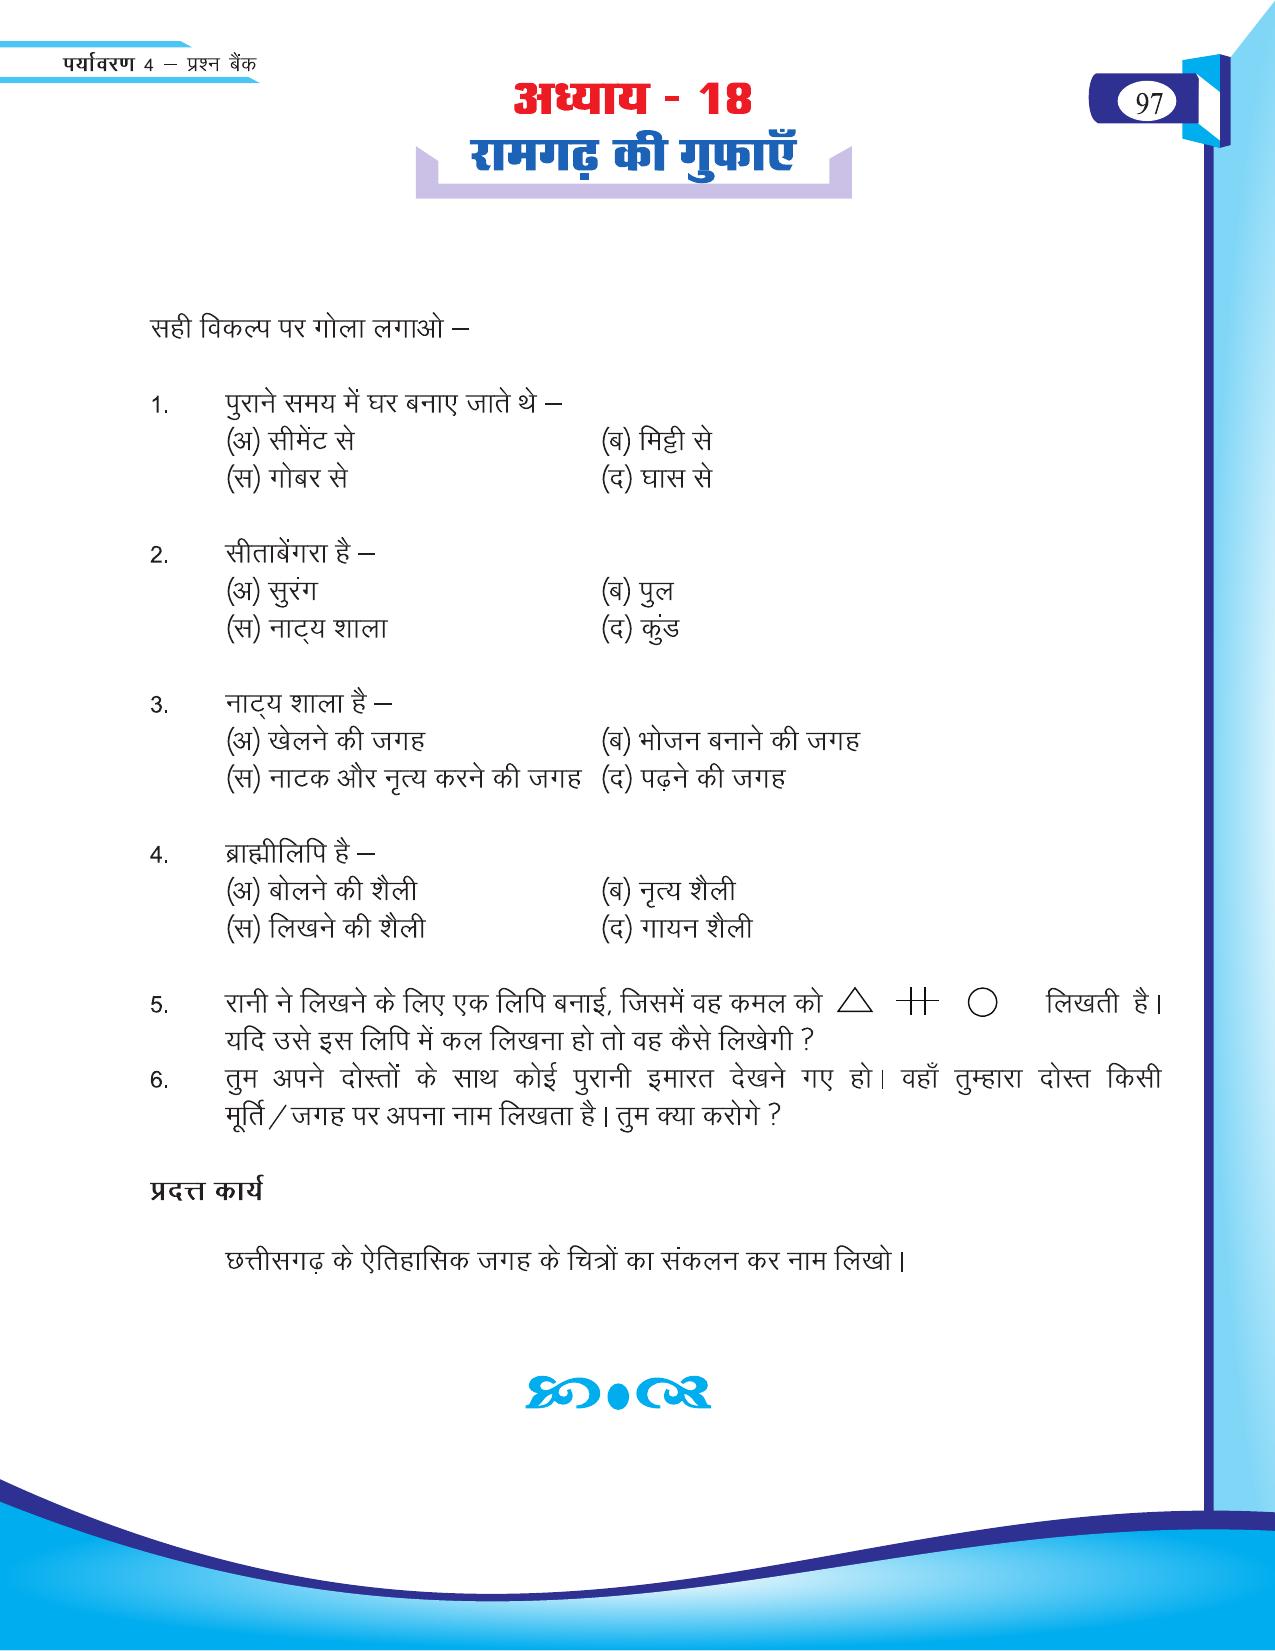 Chhattisgarh Board Class 4 EVS Question Bank 2015-16 - Page 26